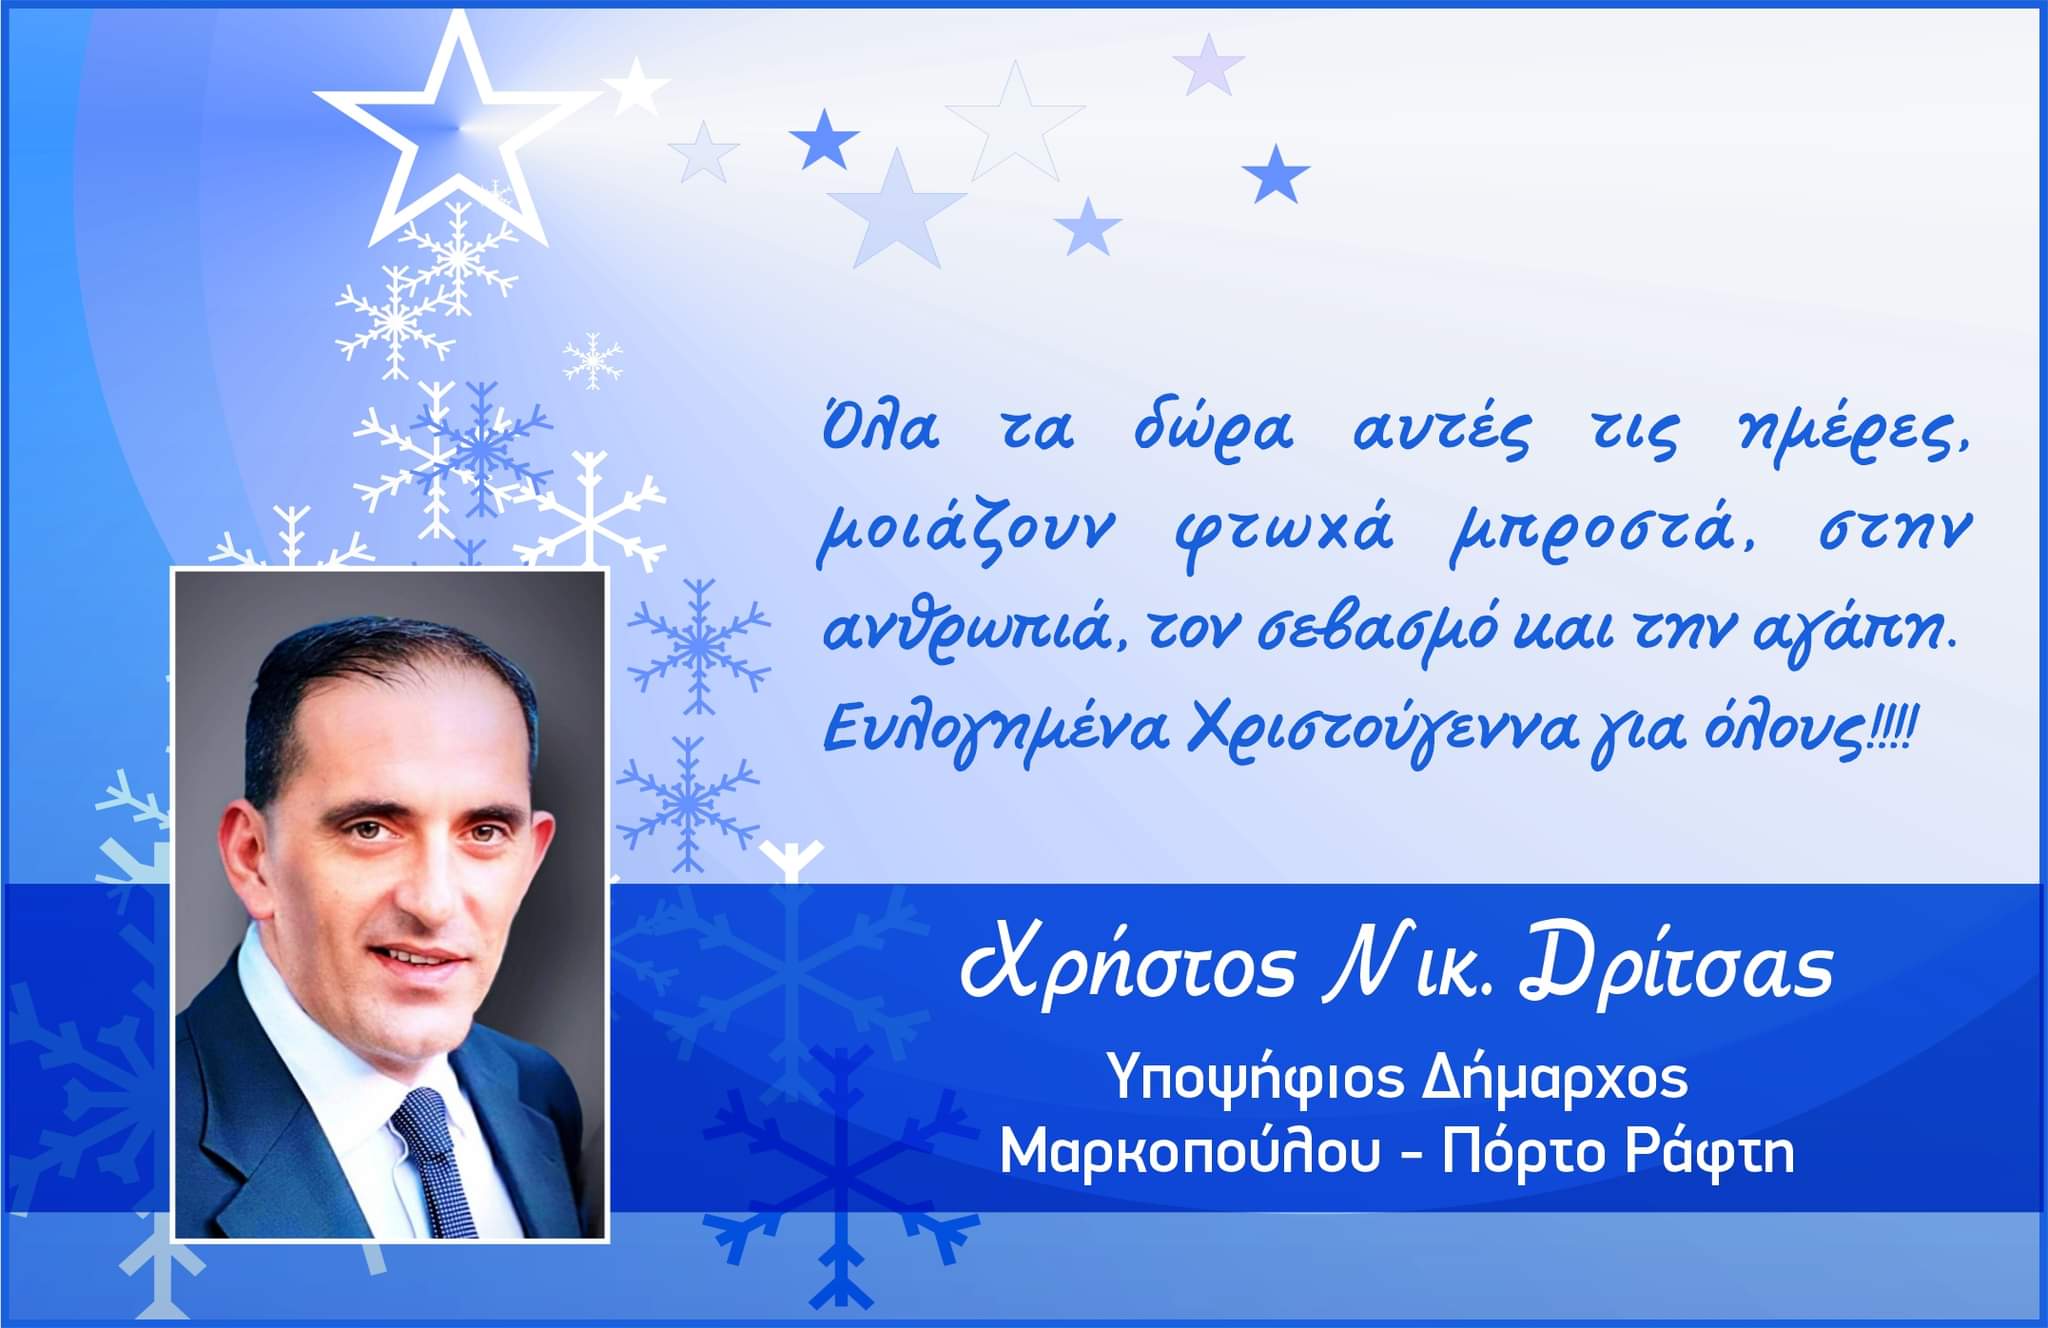 Εορταστικές ευχές Επικεφαλής Δημοτικής Παράταξης και Υποψηφίου Δημάρχου Μαρκοπούλου – Πόρτο Ράφτη Χρήστου Δρίτσα